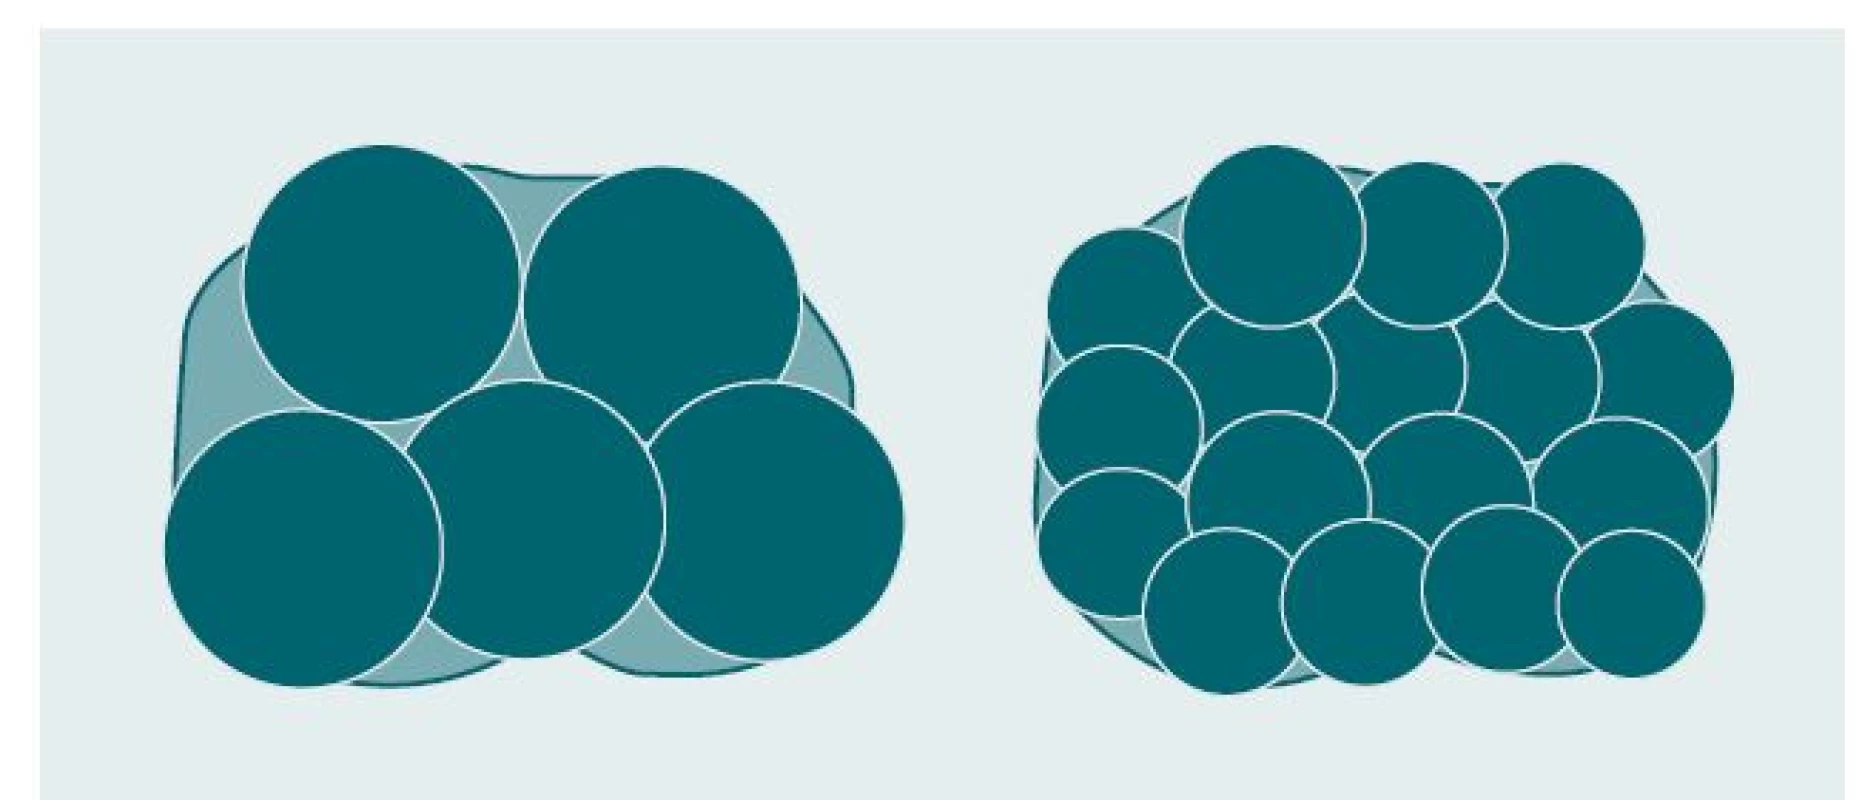 Srovnání velikosti ice-balls vytvořených s použitím kryosond (vlevo) a pomocí kryojehel (vpravo).